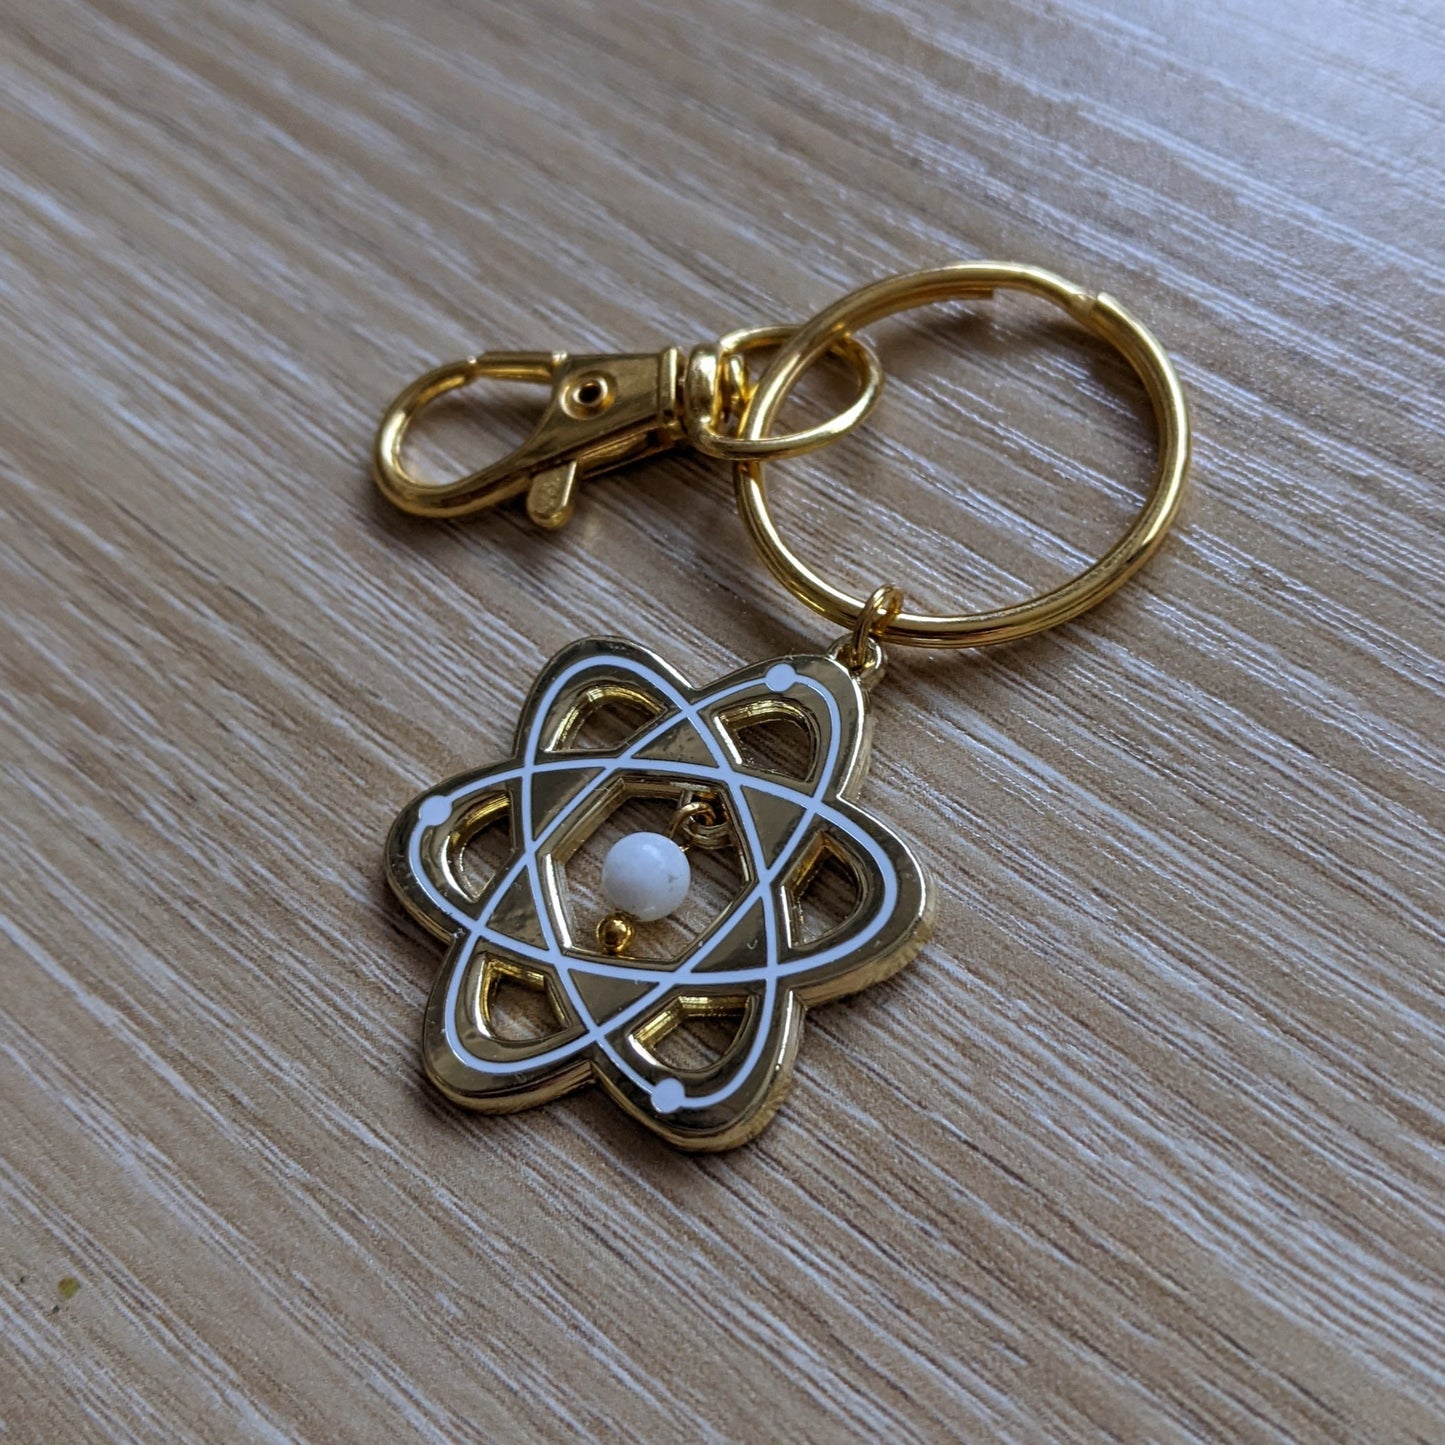 Atom | Keychain